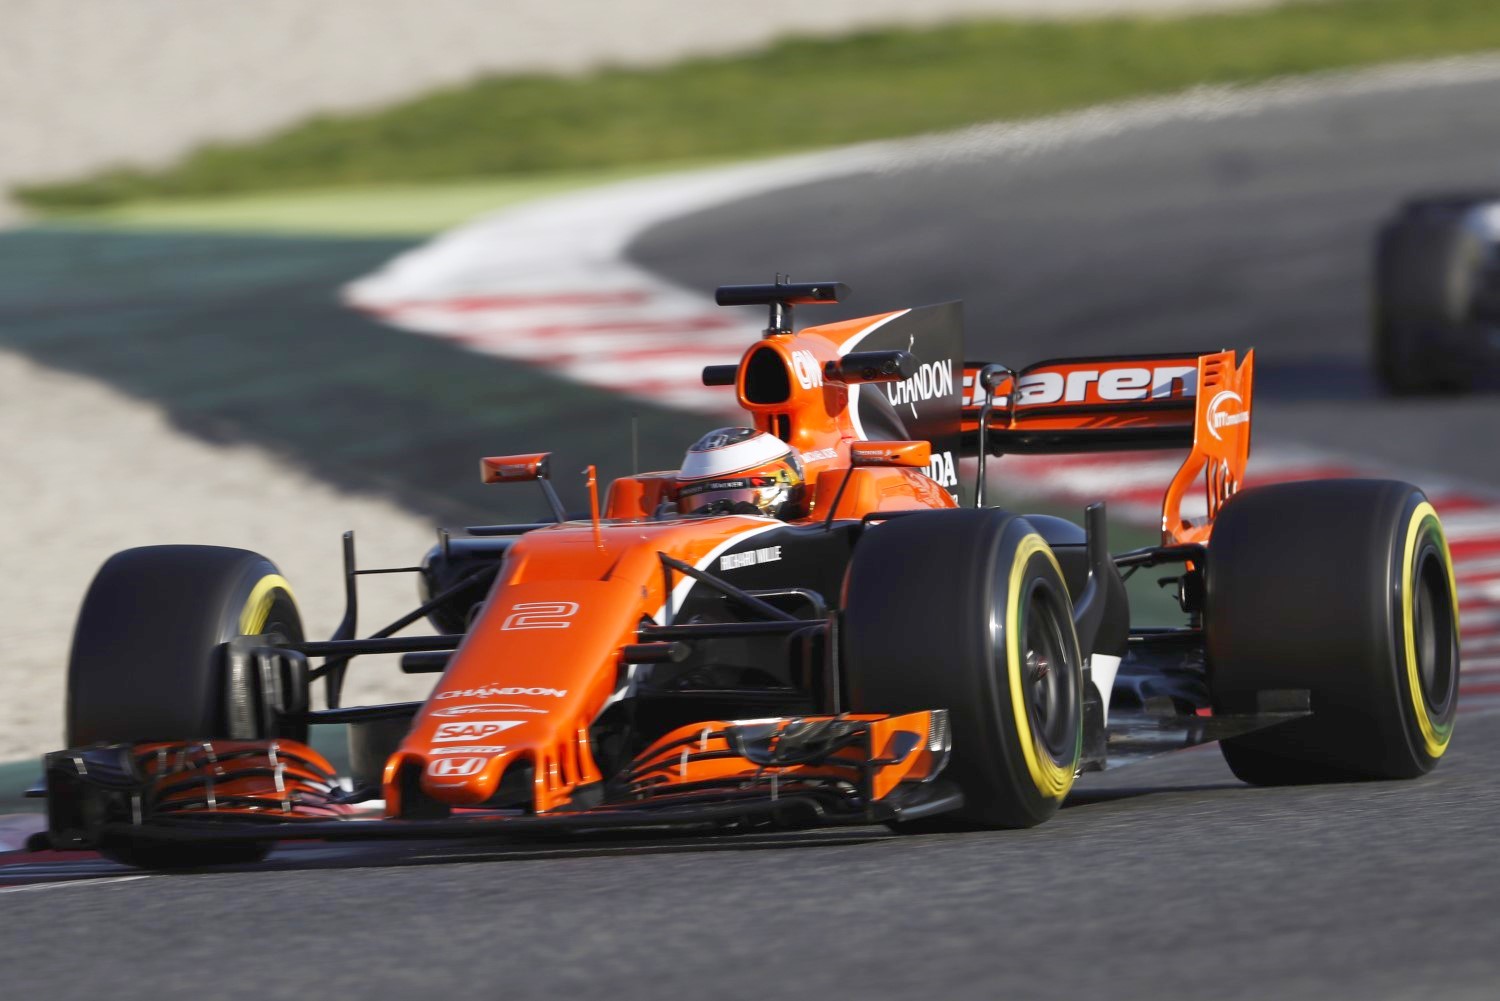 Vandoorne's McLaren Honda